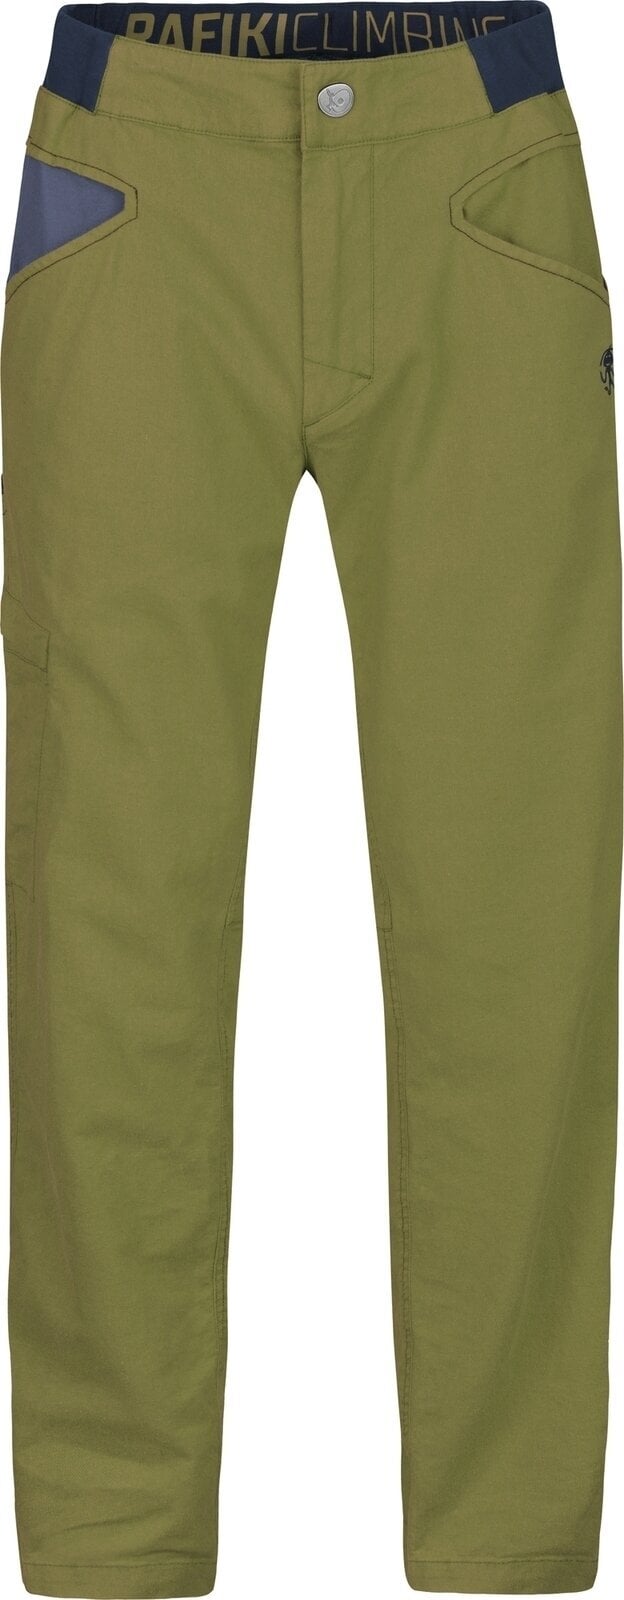 Outdoor Pants Rafiki Grip Man Pants Avocado XL Outdoor Pants